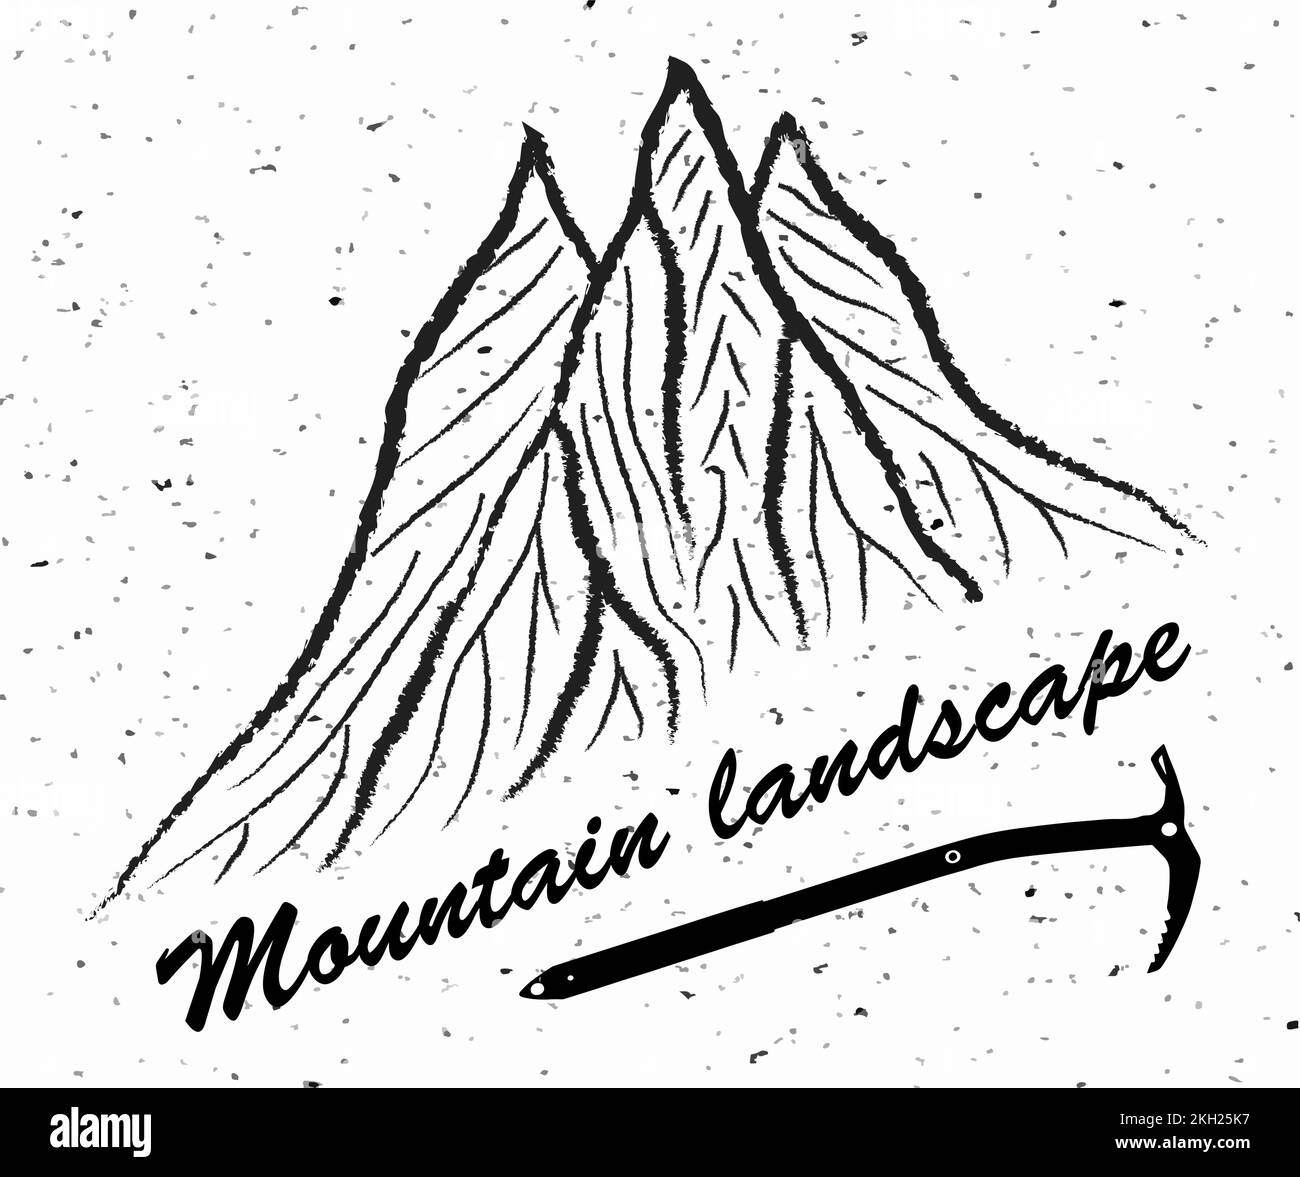 Montagnes et hache de glace avec texte Paysage de montagne, logo d'illustration vectorielle, noir et blanc Illustration de Vecteur